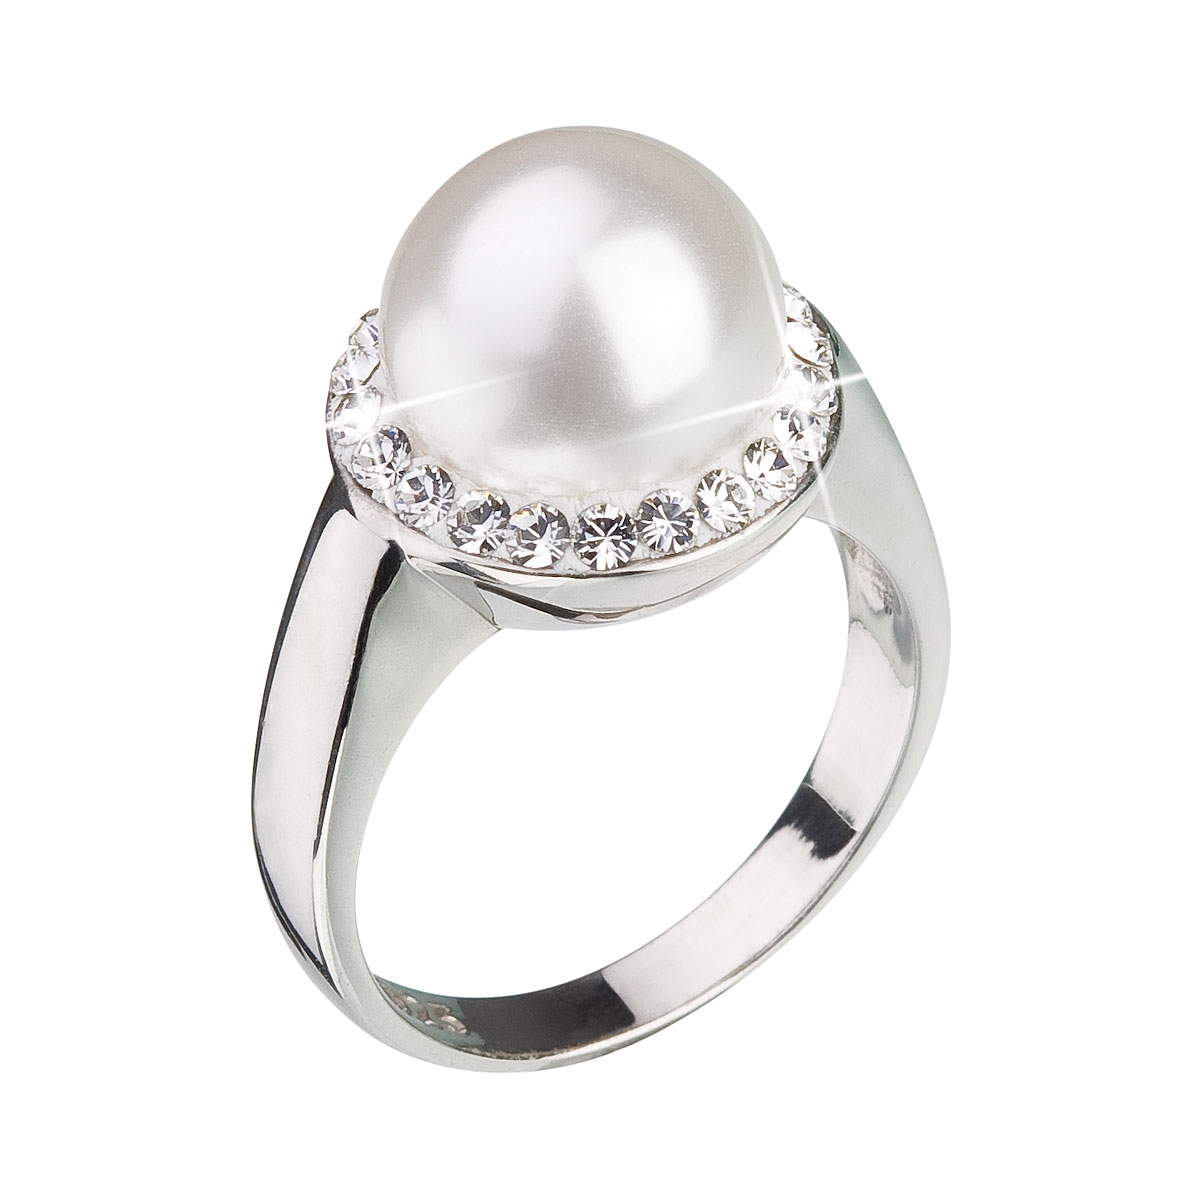 Strieborný prsteň s kryštálmi Swarovski a bielou perlou